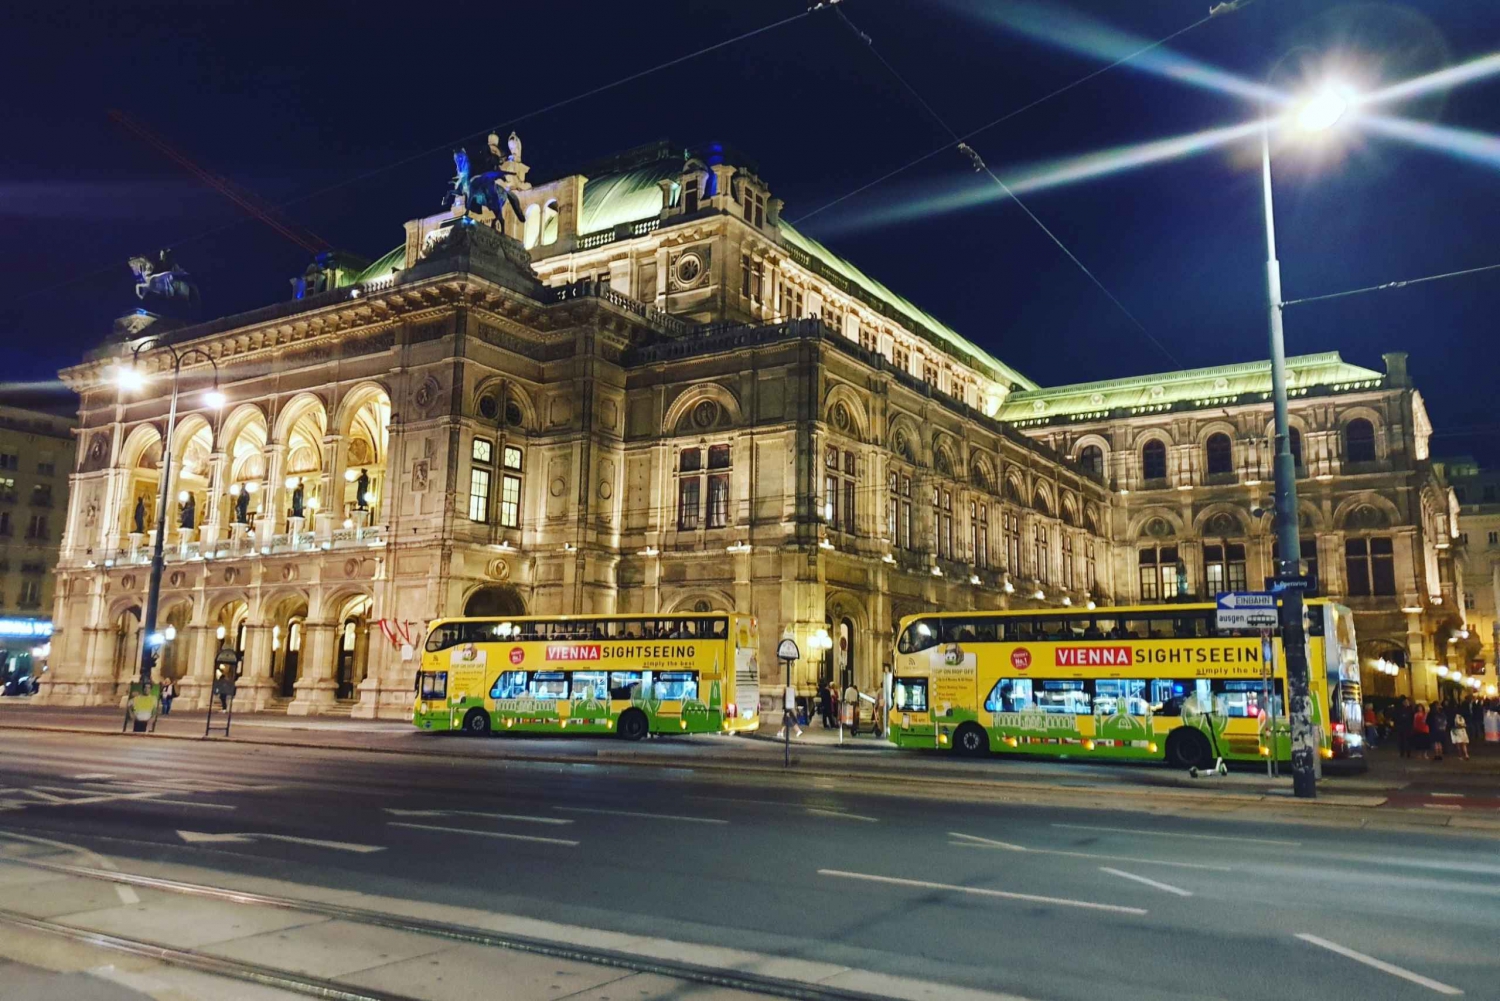 Viena: Tour nocturno panorámico en autobús